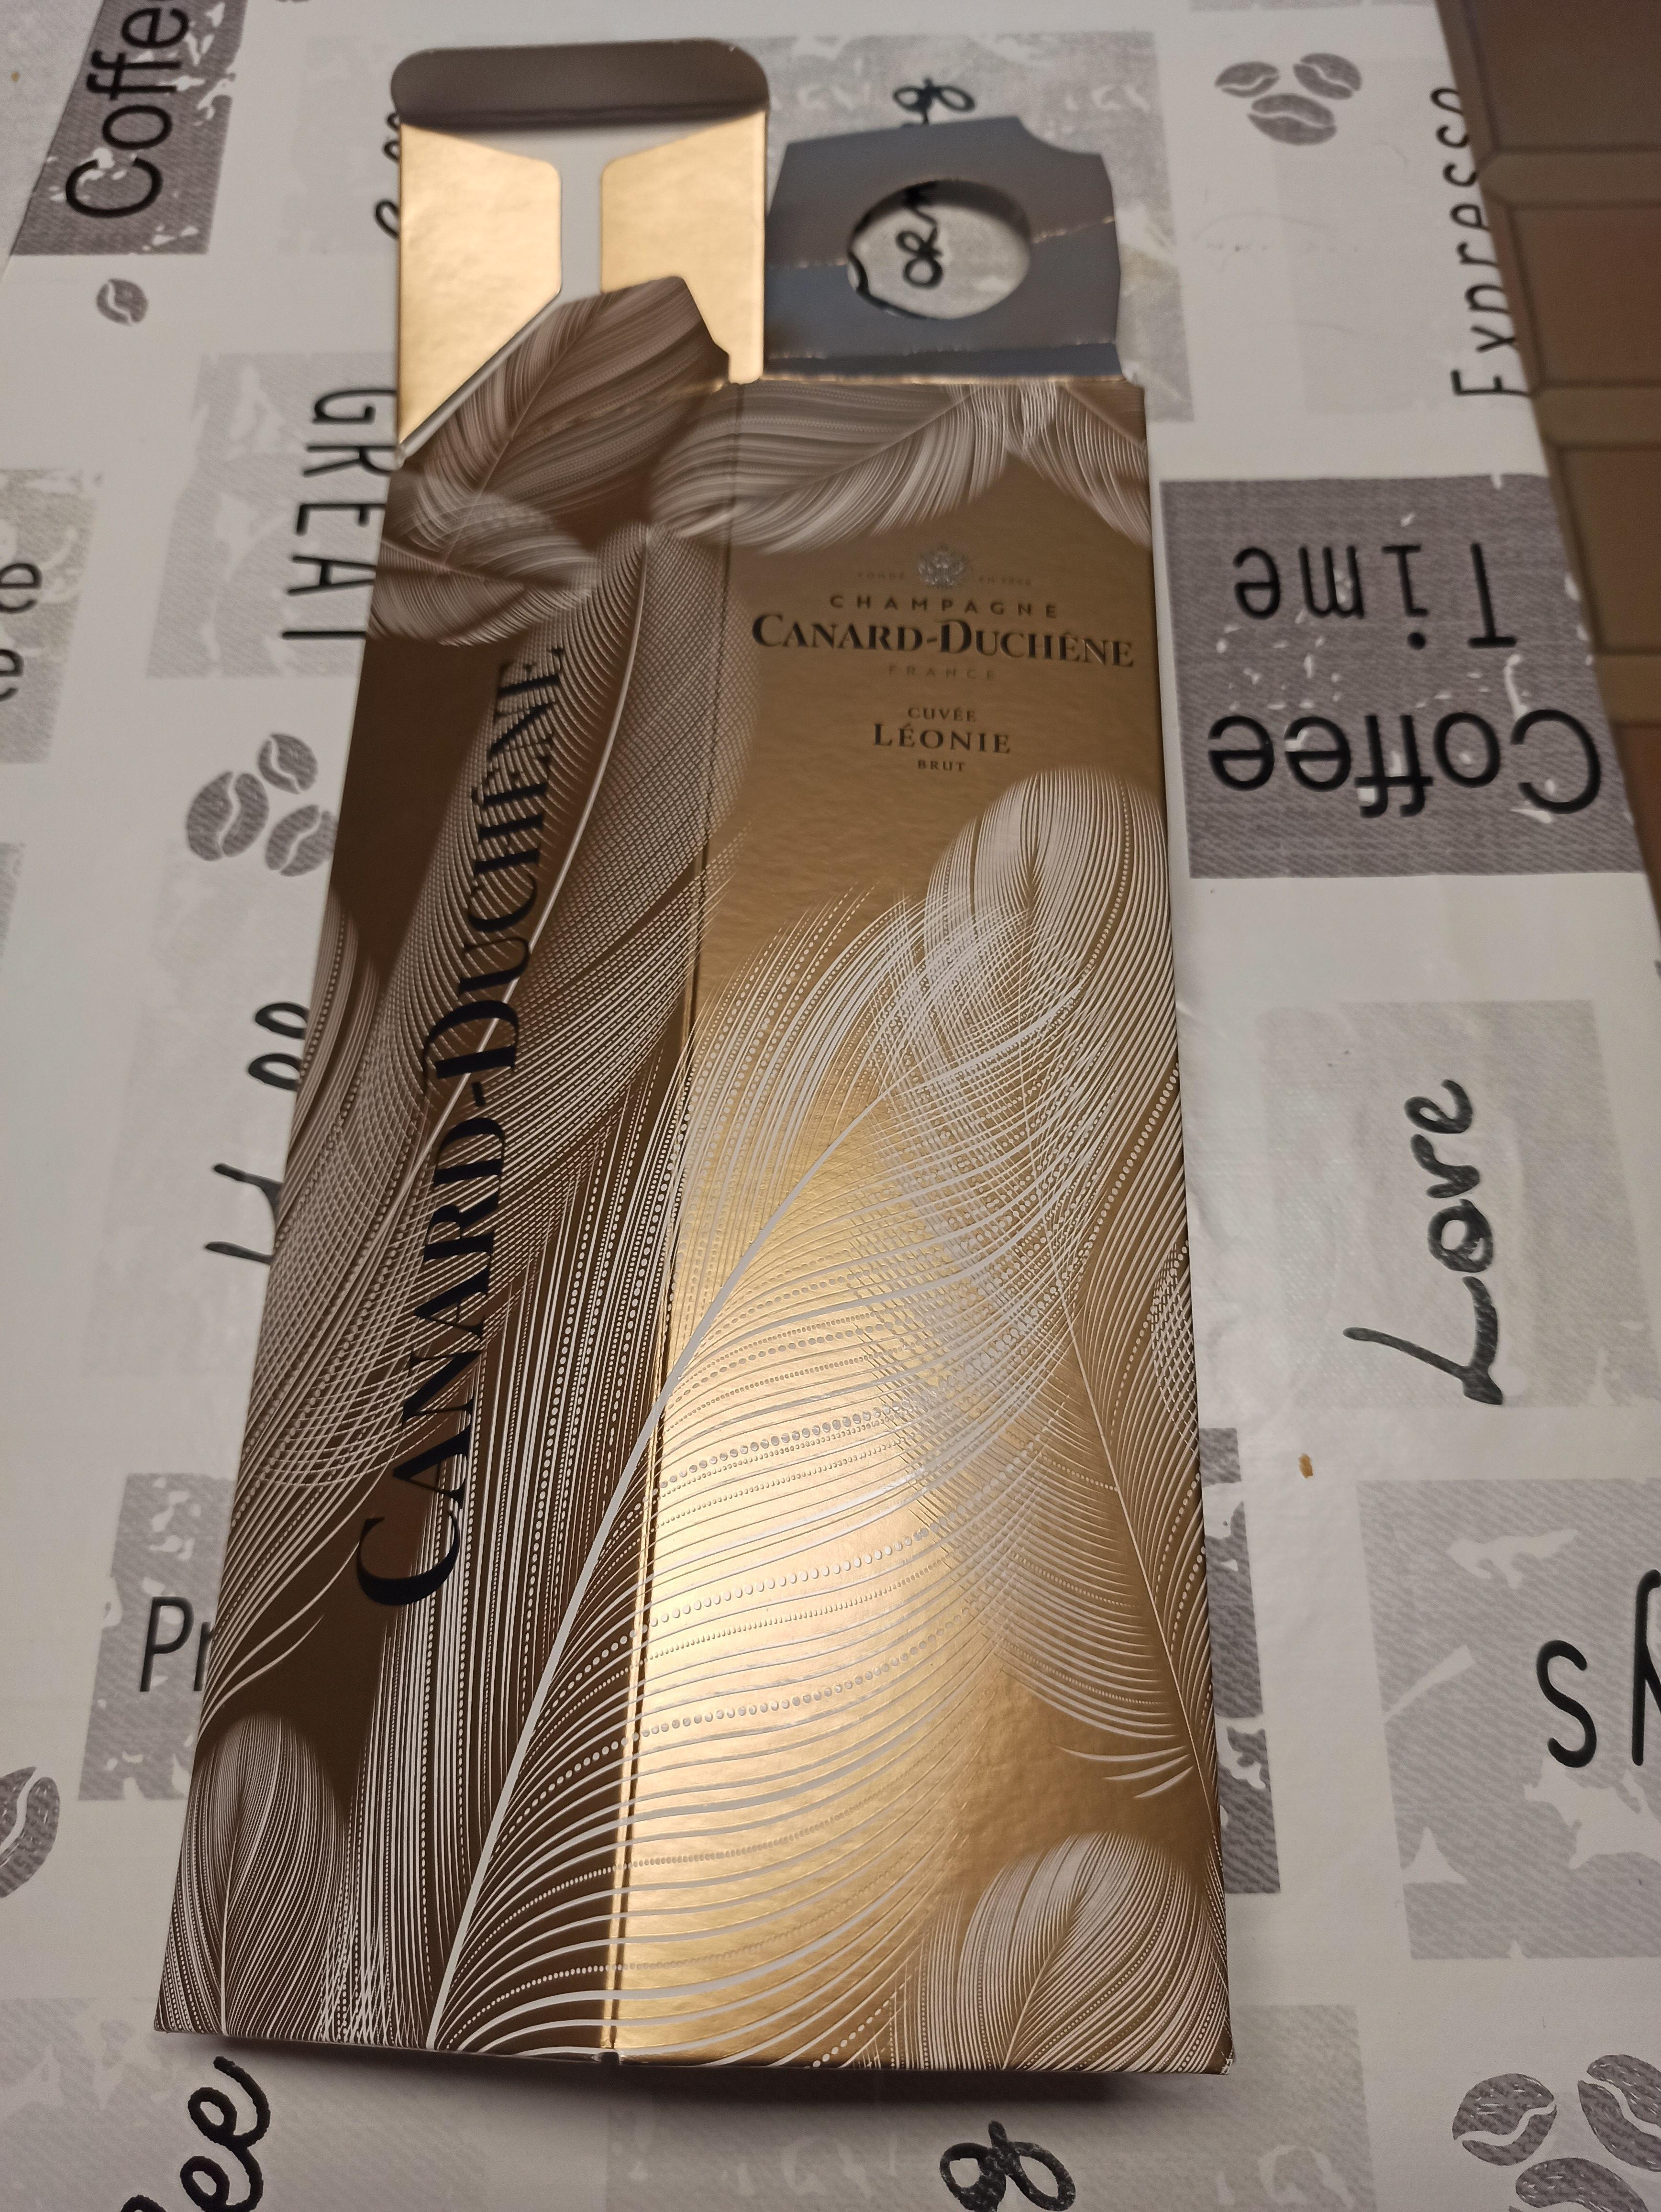 troc de troc boîte en carton pour une bouteille de champagne canard duchêne image 0